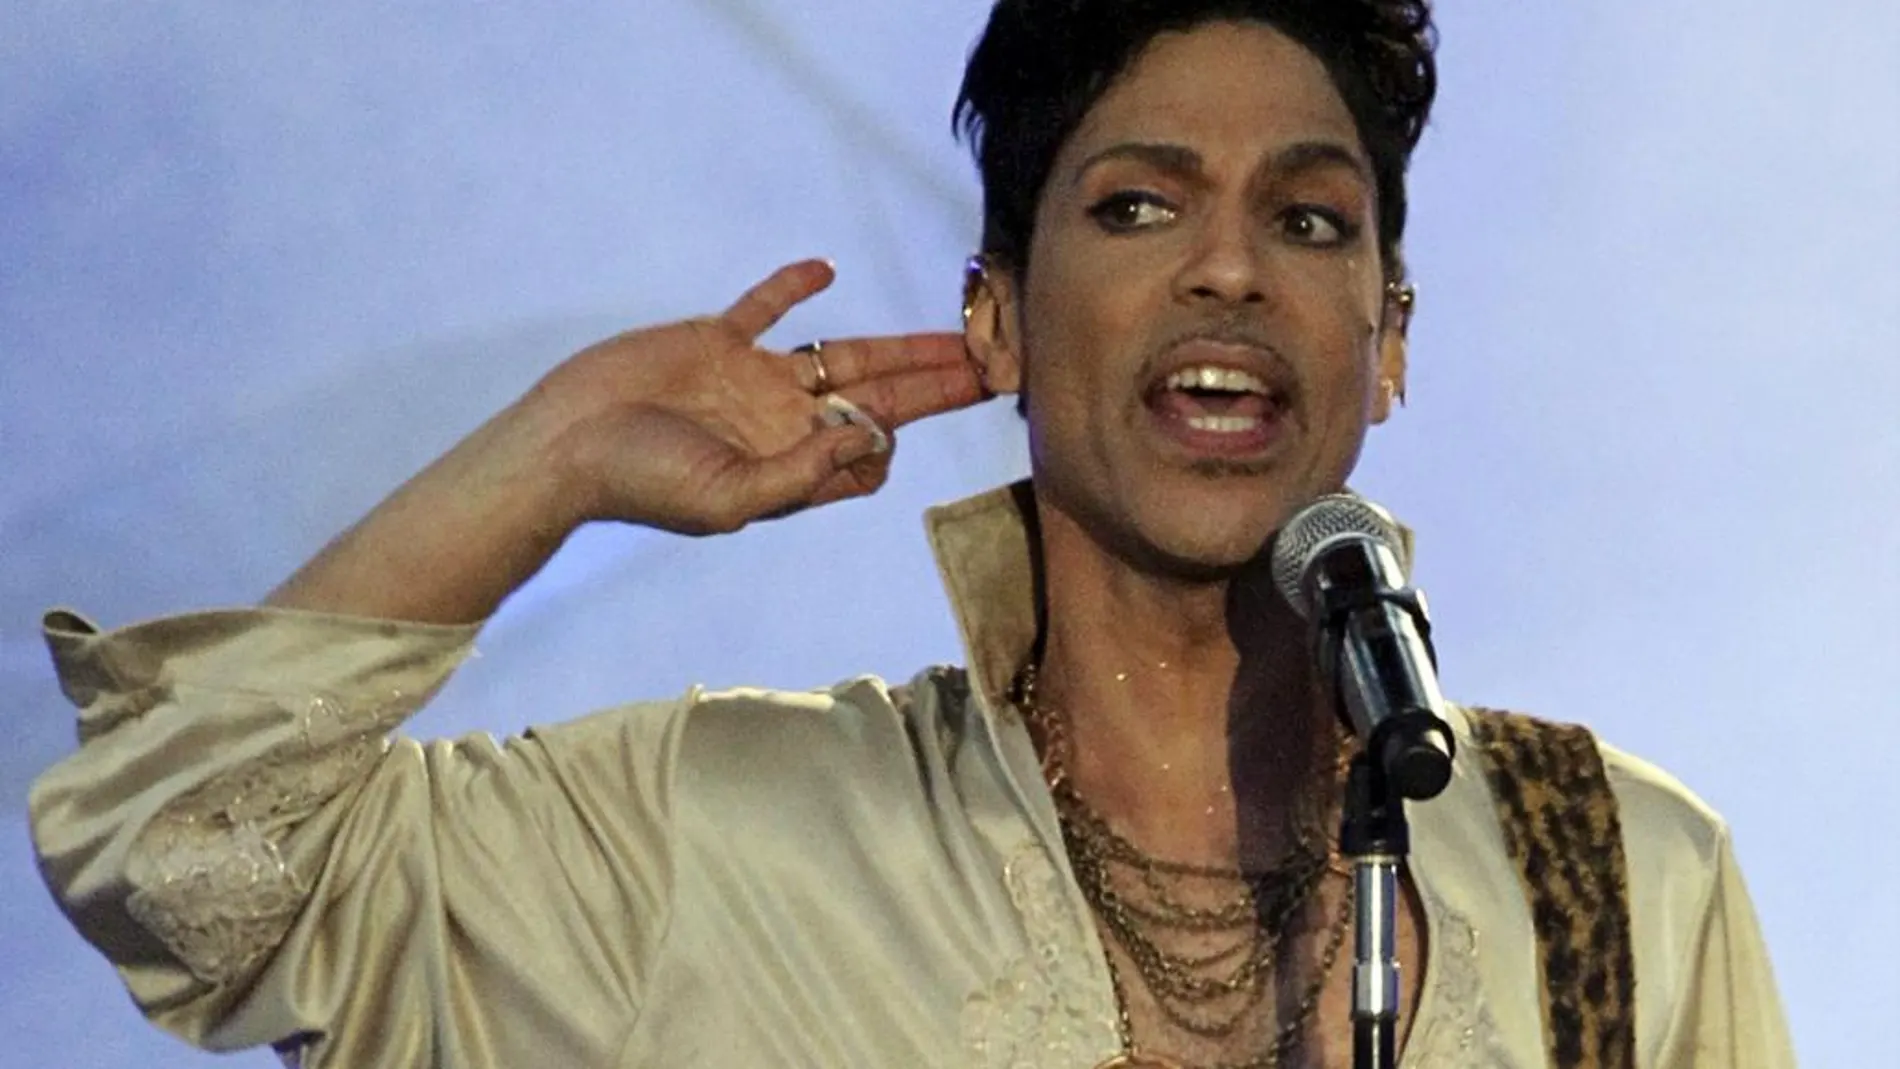 Prince durante una actuación